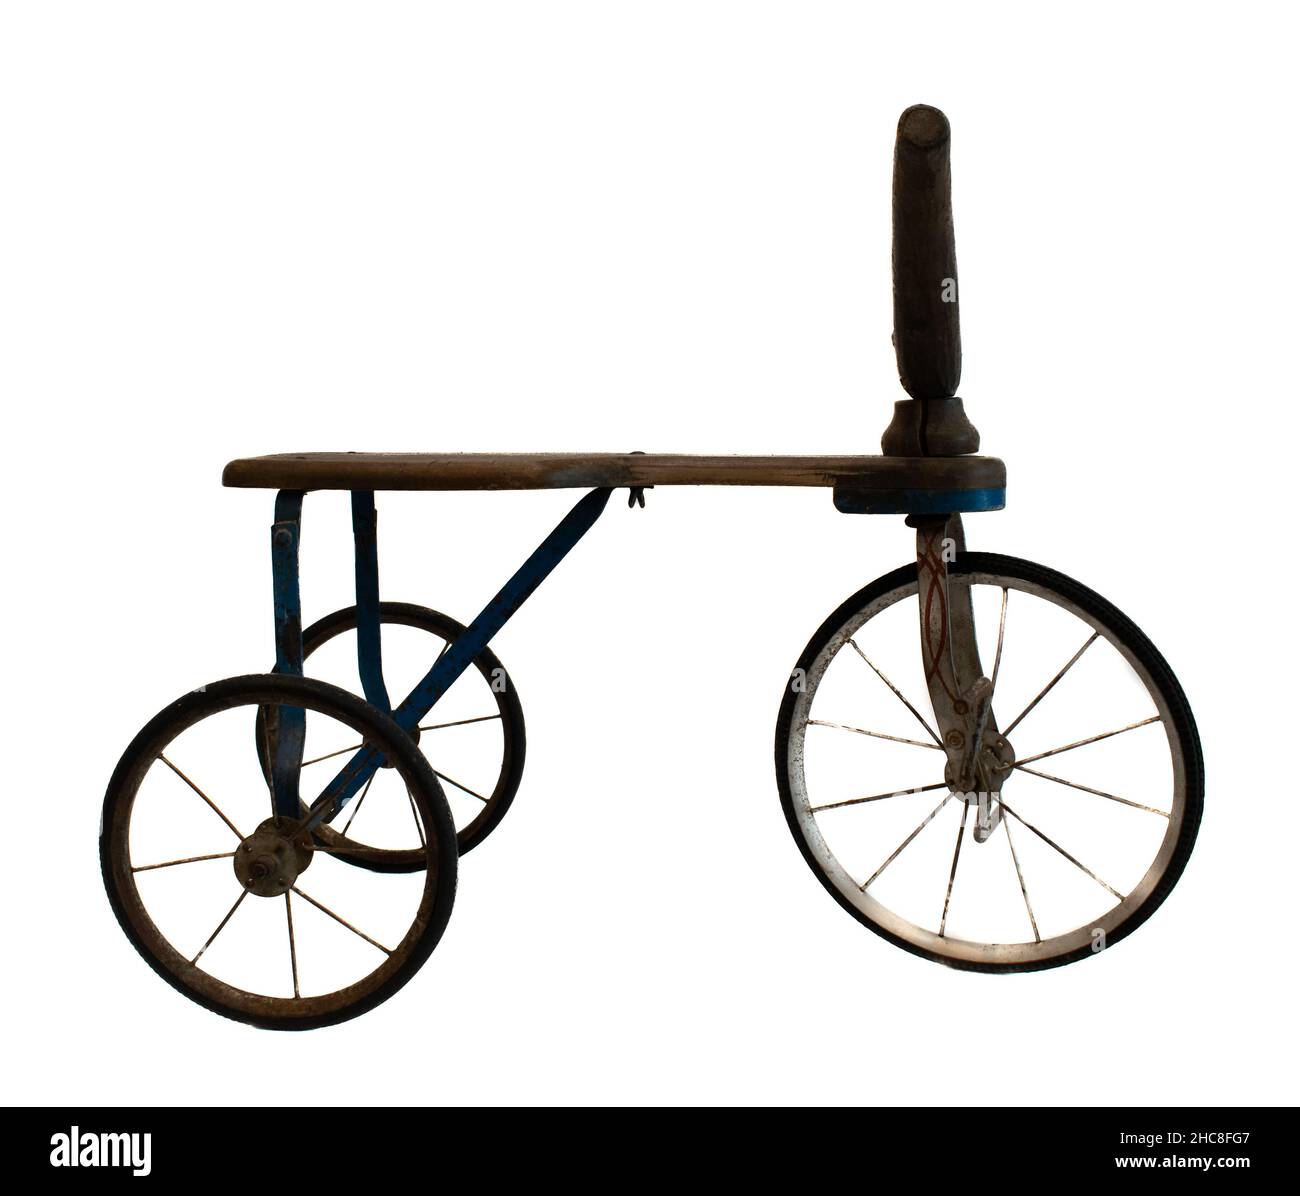 Antiguo triciclo infantil de madera y hierro Stock Photo